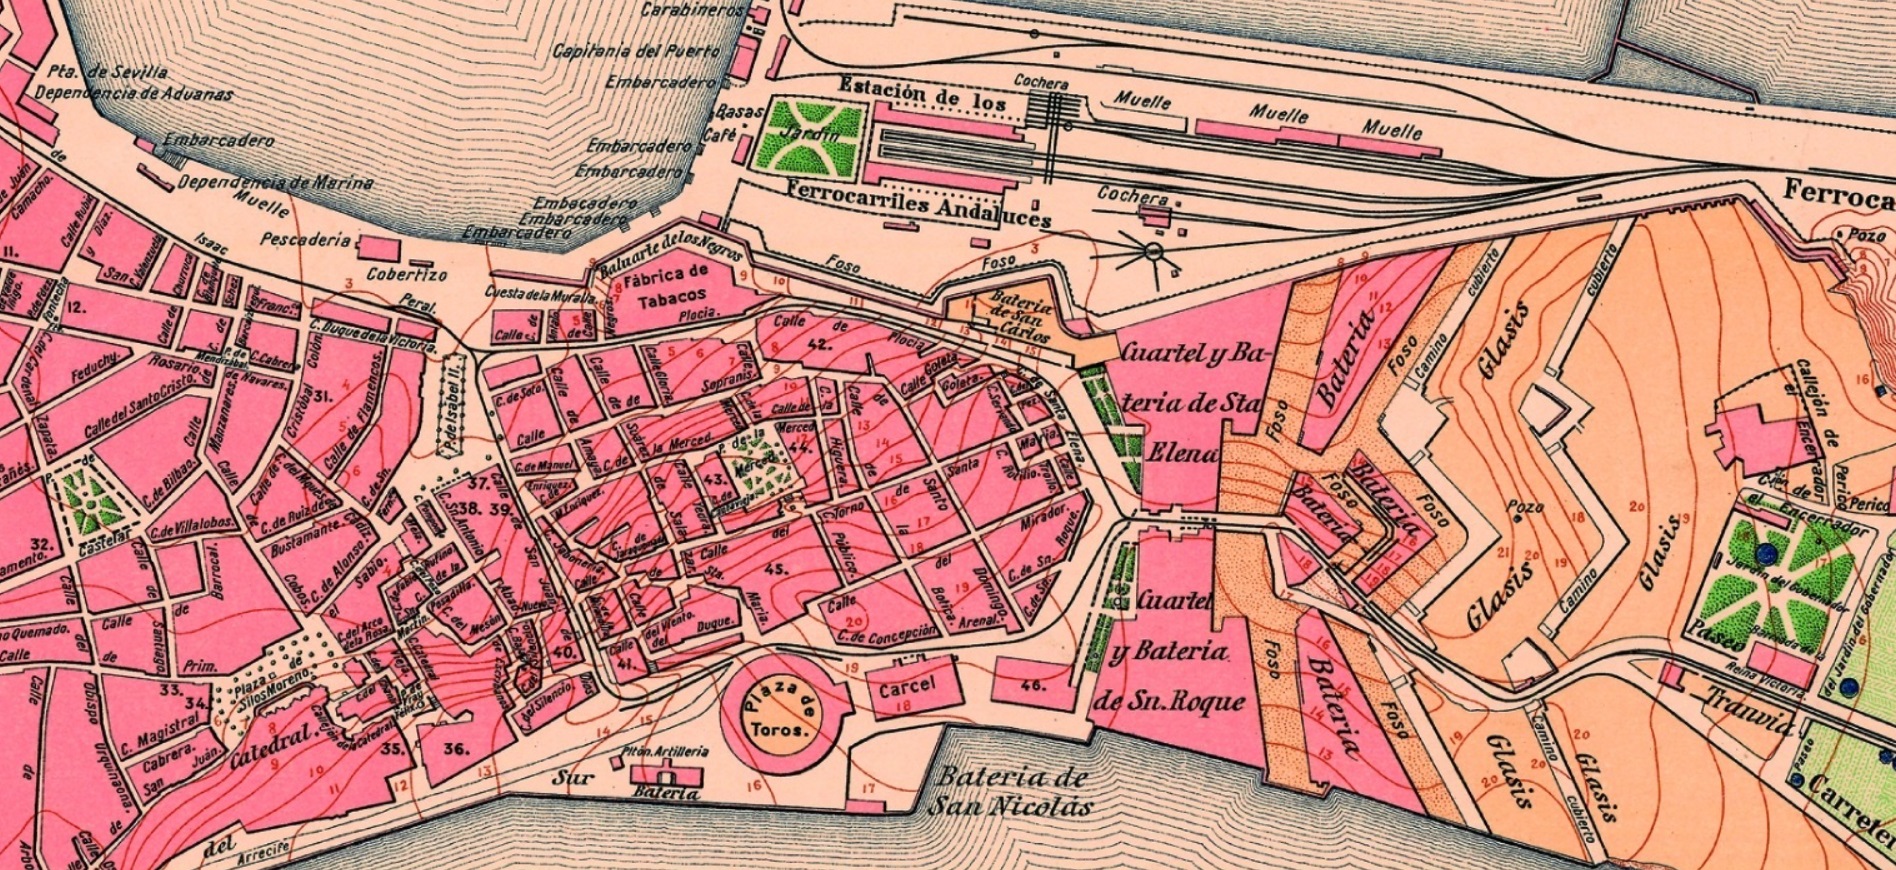 Detalle del mapa de Cádiz en el entorno de la estación de ferrocarril